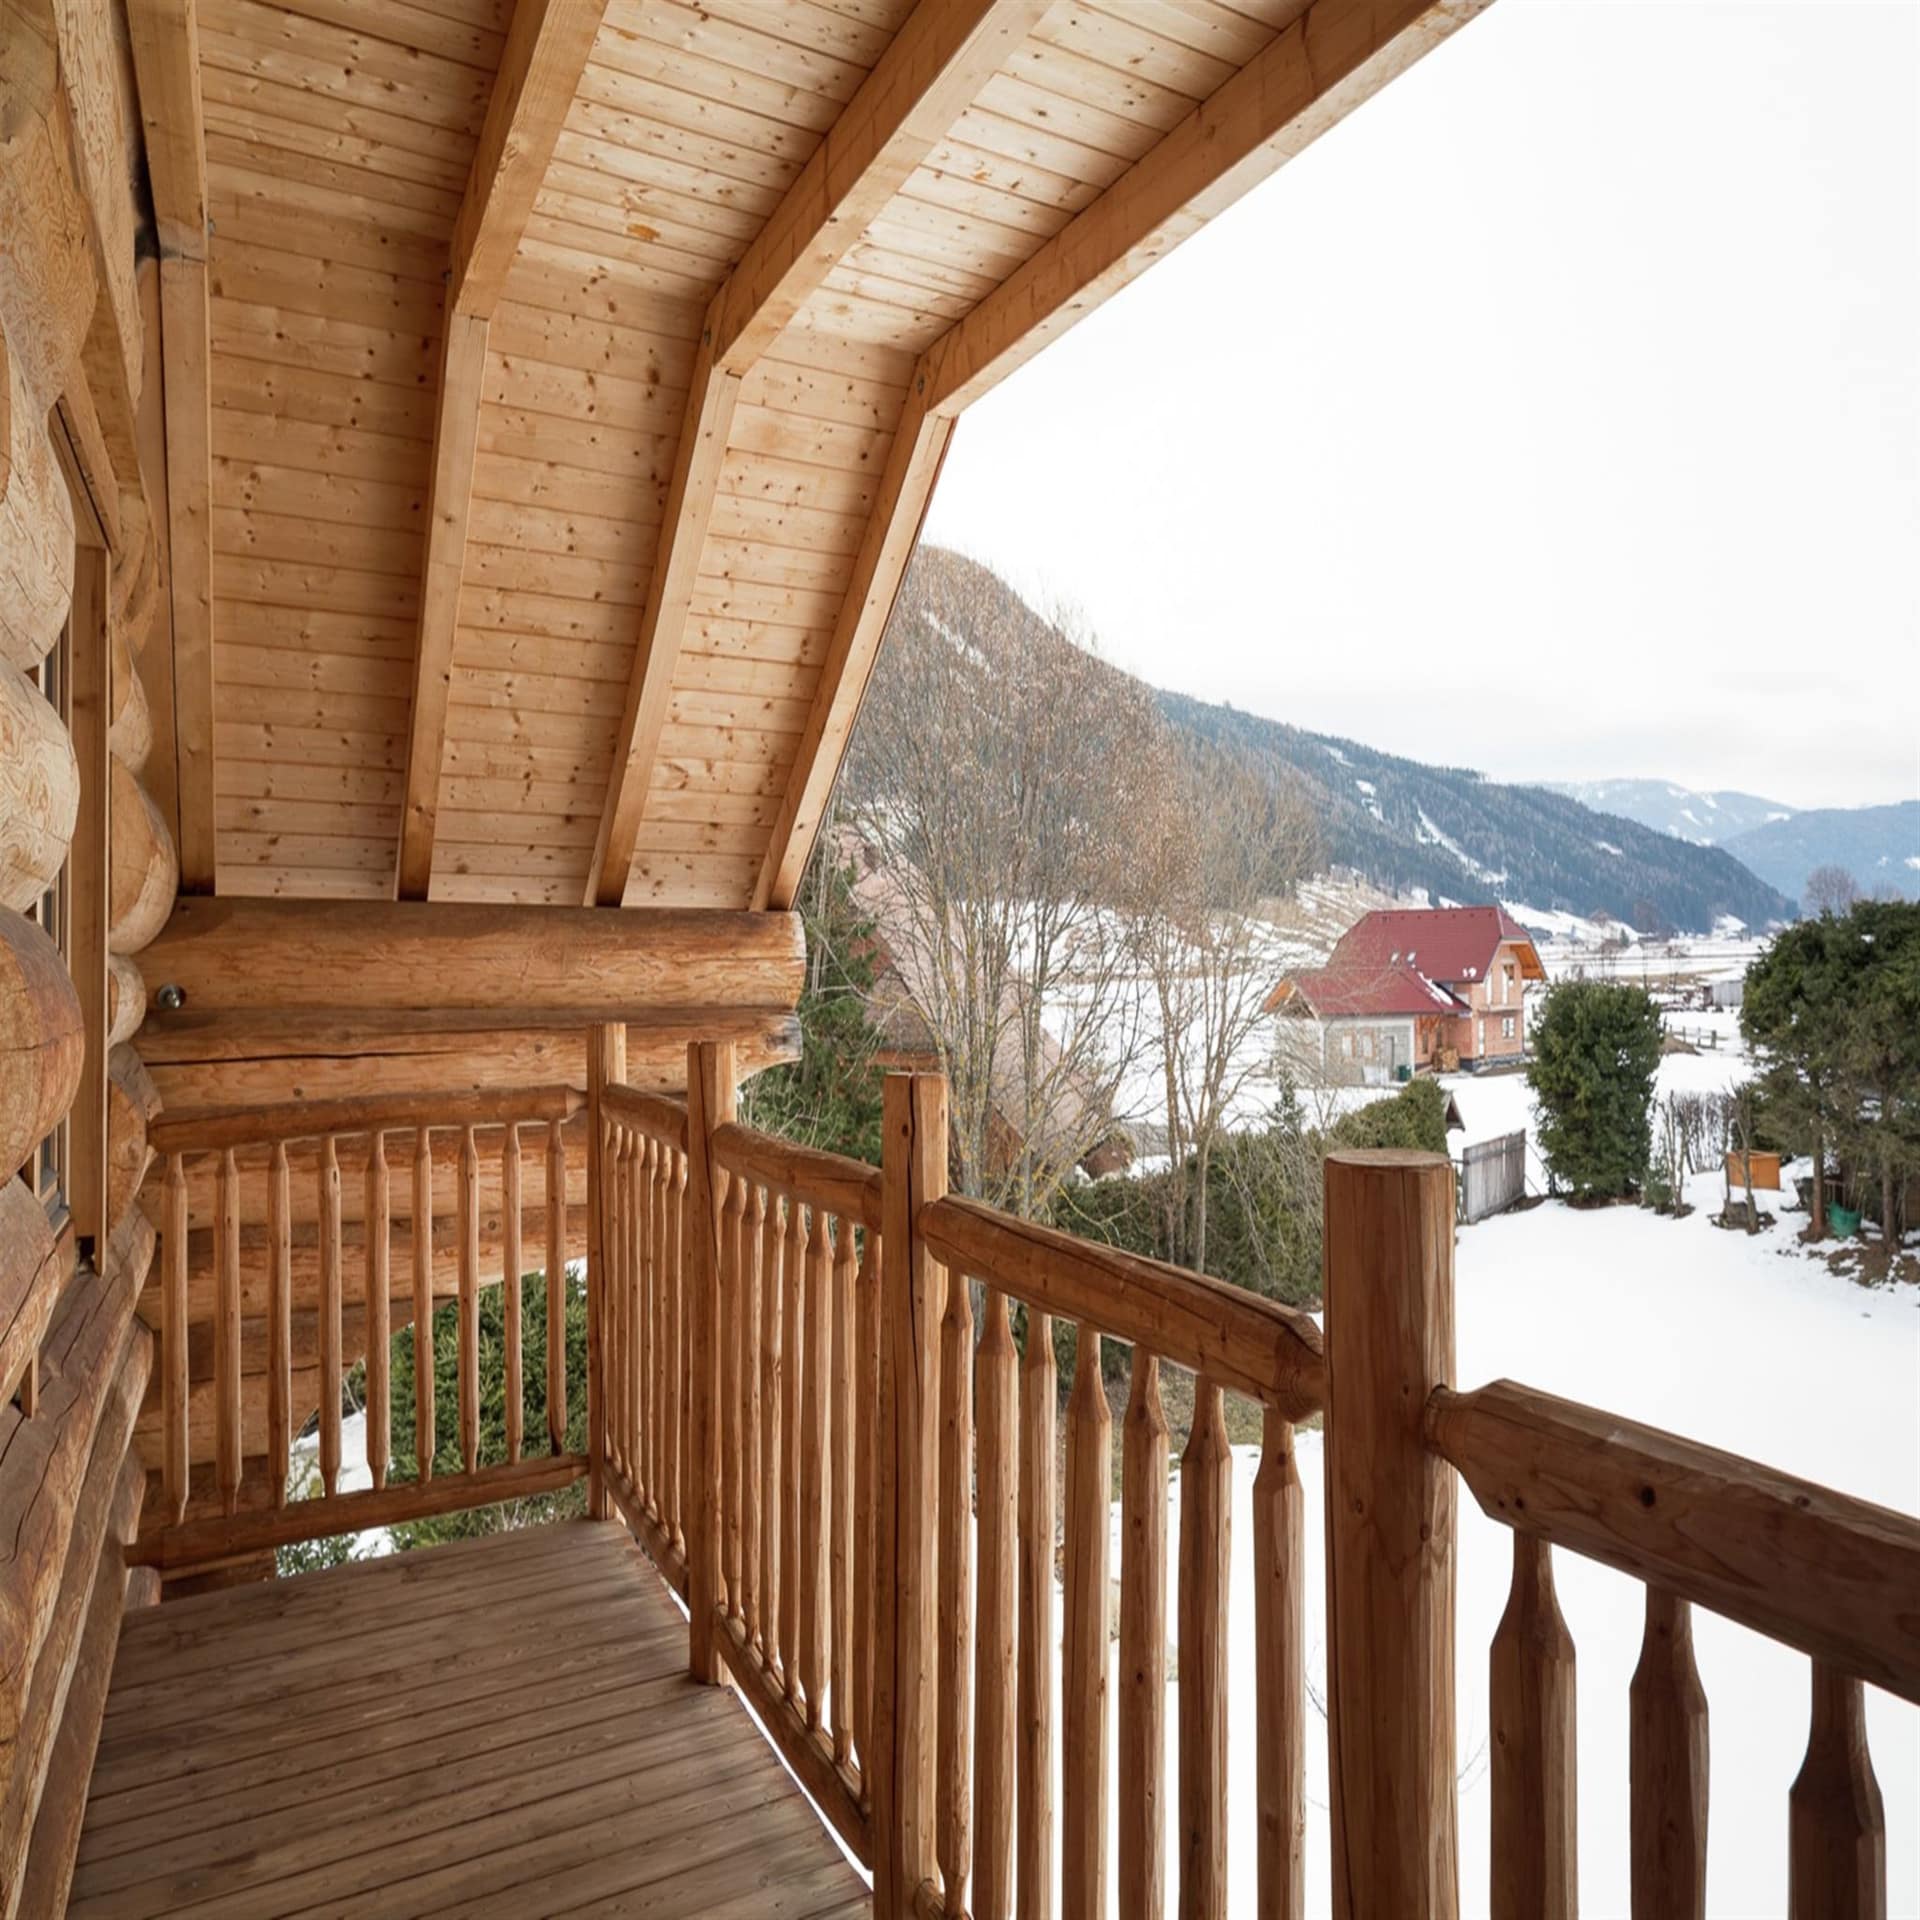 Holzbalkon eines Holzhauses mit Blick auf den verschneiten Ort Obertauern.